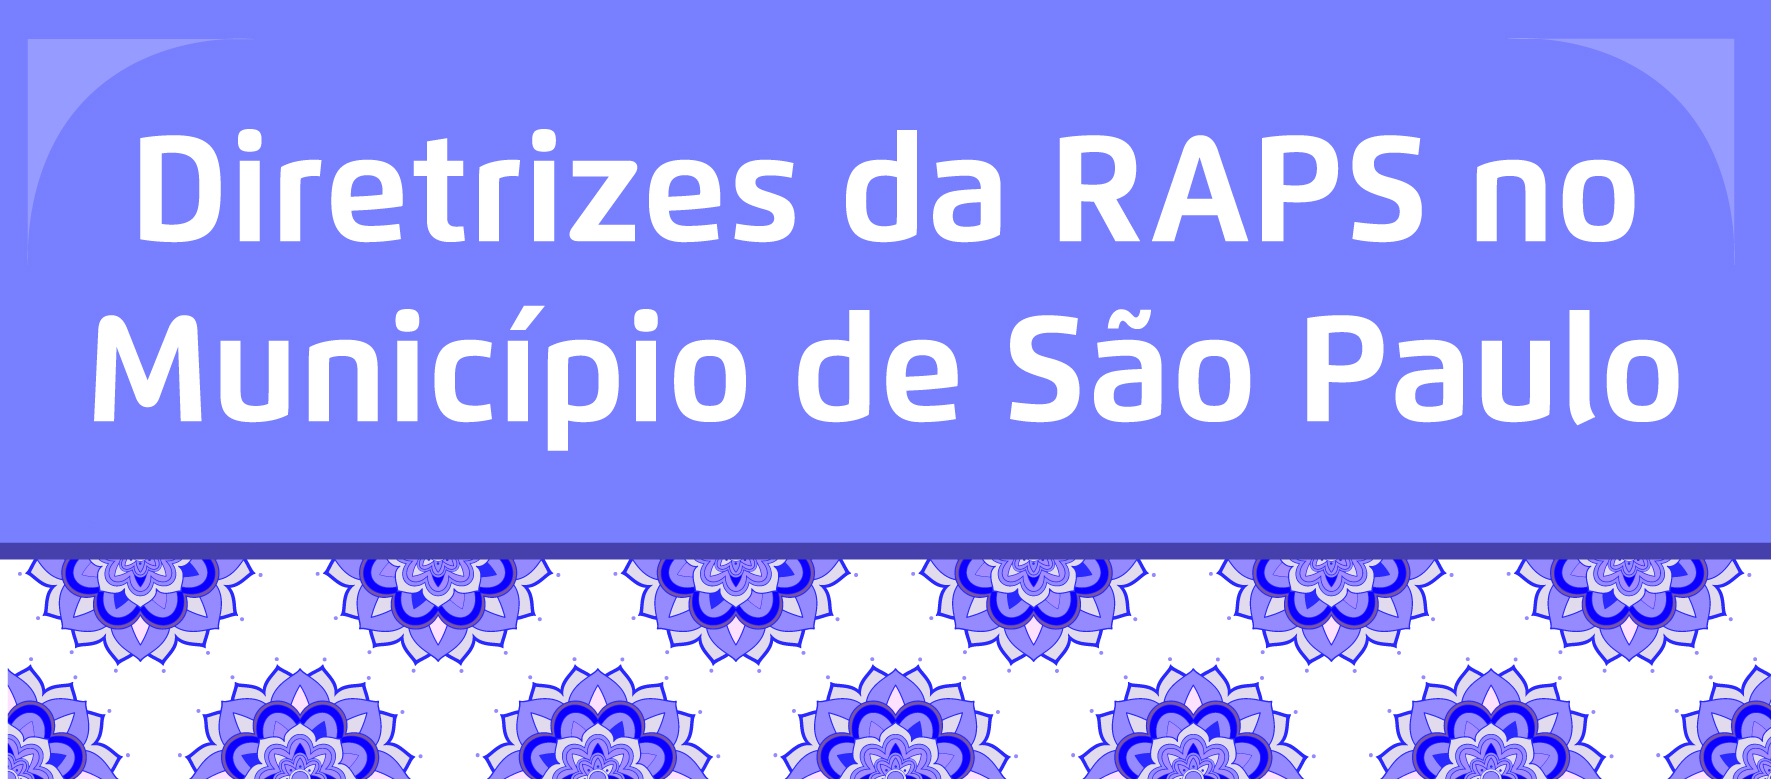 A arte tem um fundo roxo e em branco está escrito "Diretrizes da RAPS no Município de São Paulo" e abaixo flores da cor roxa com fundo branco